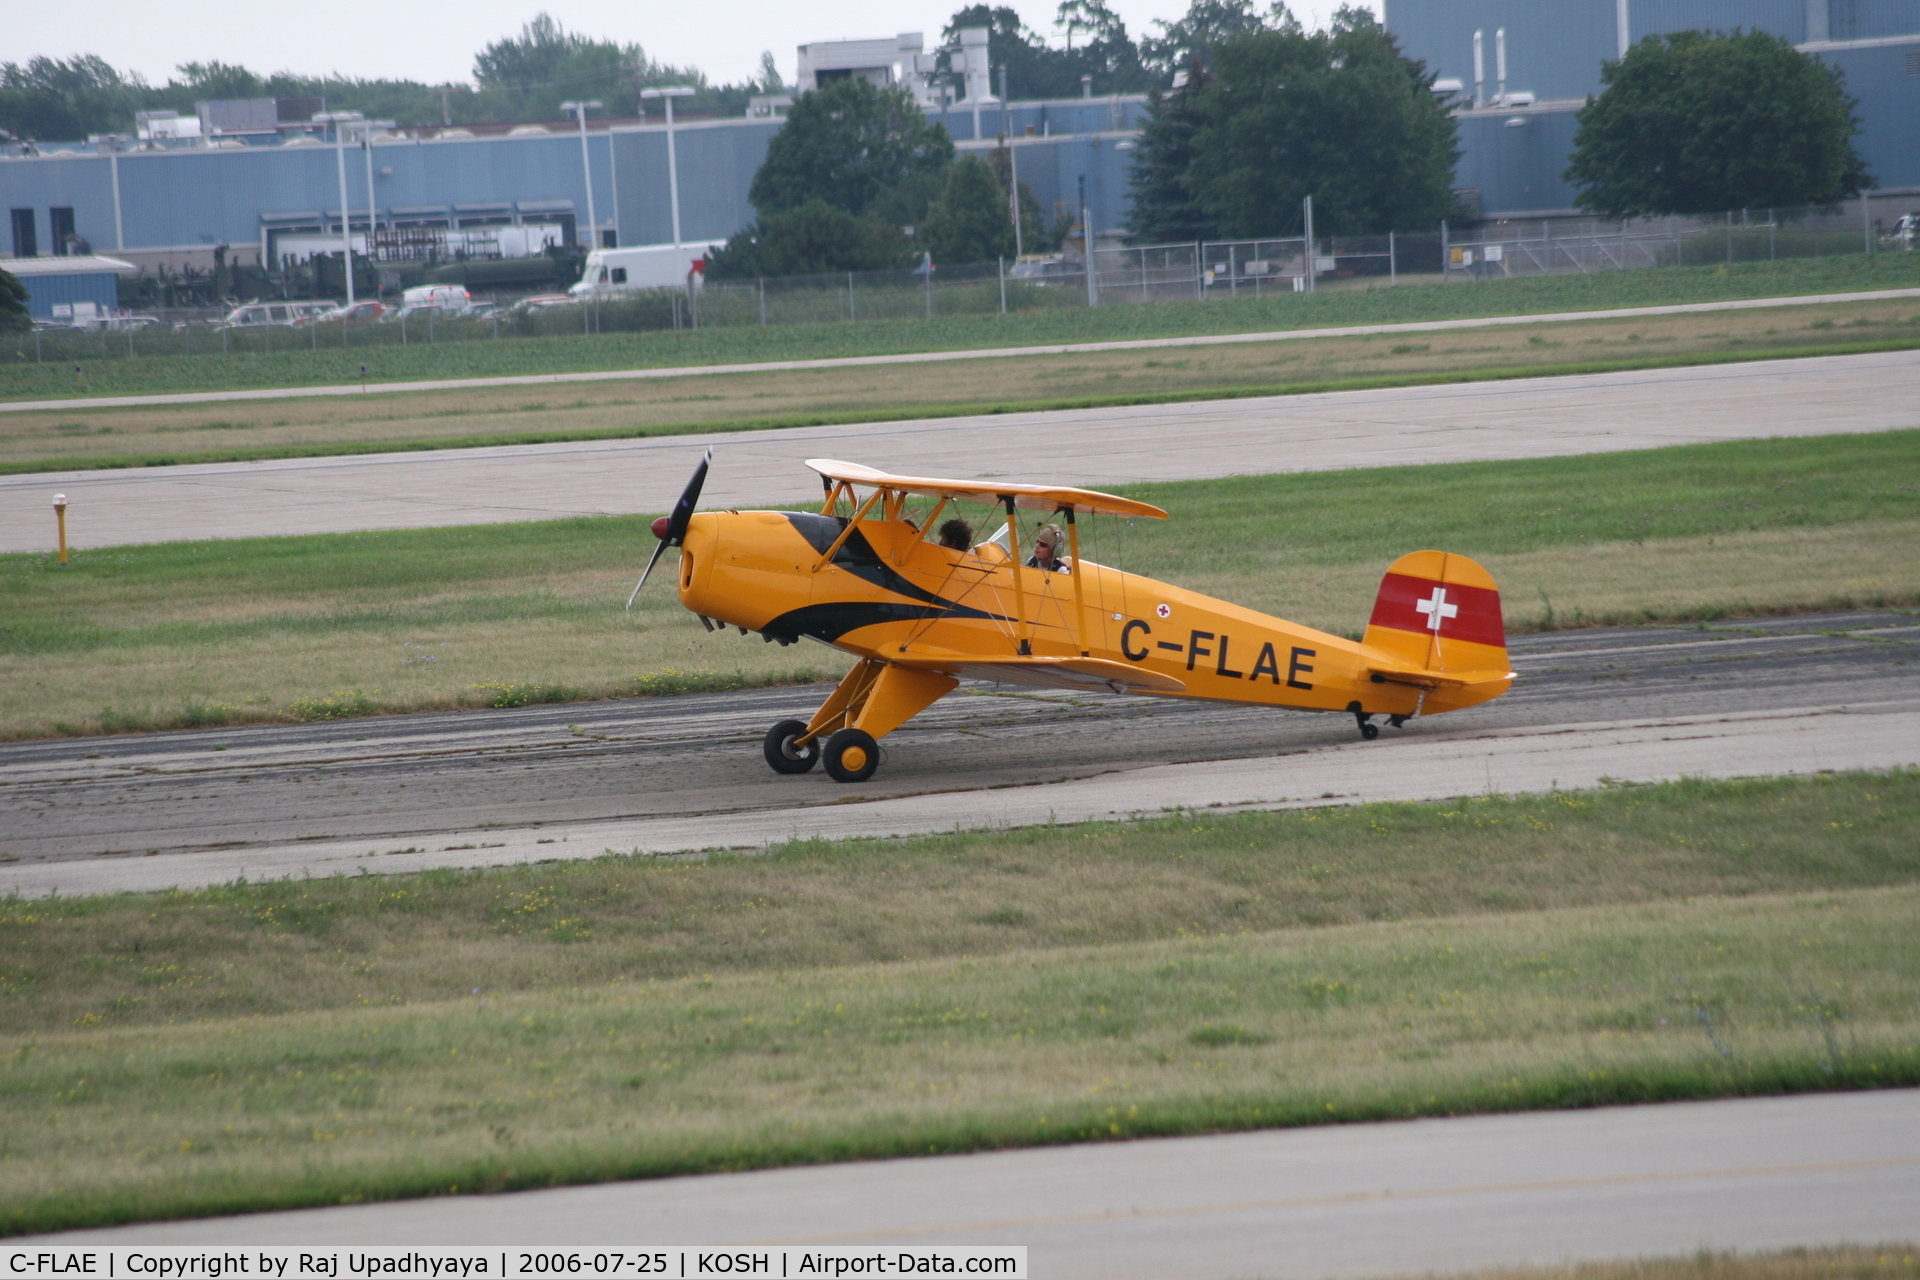 C-FLAE, 2003 CASA 1-131E Jungmann 2000 C/N 439, C-FLAE at Airventure 2006